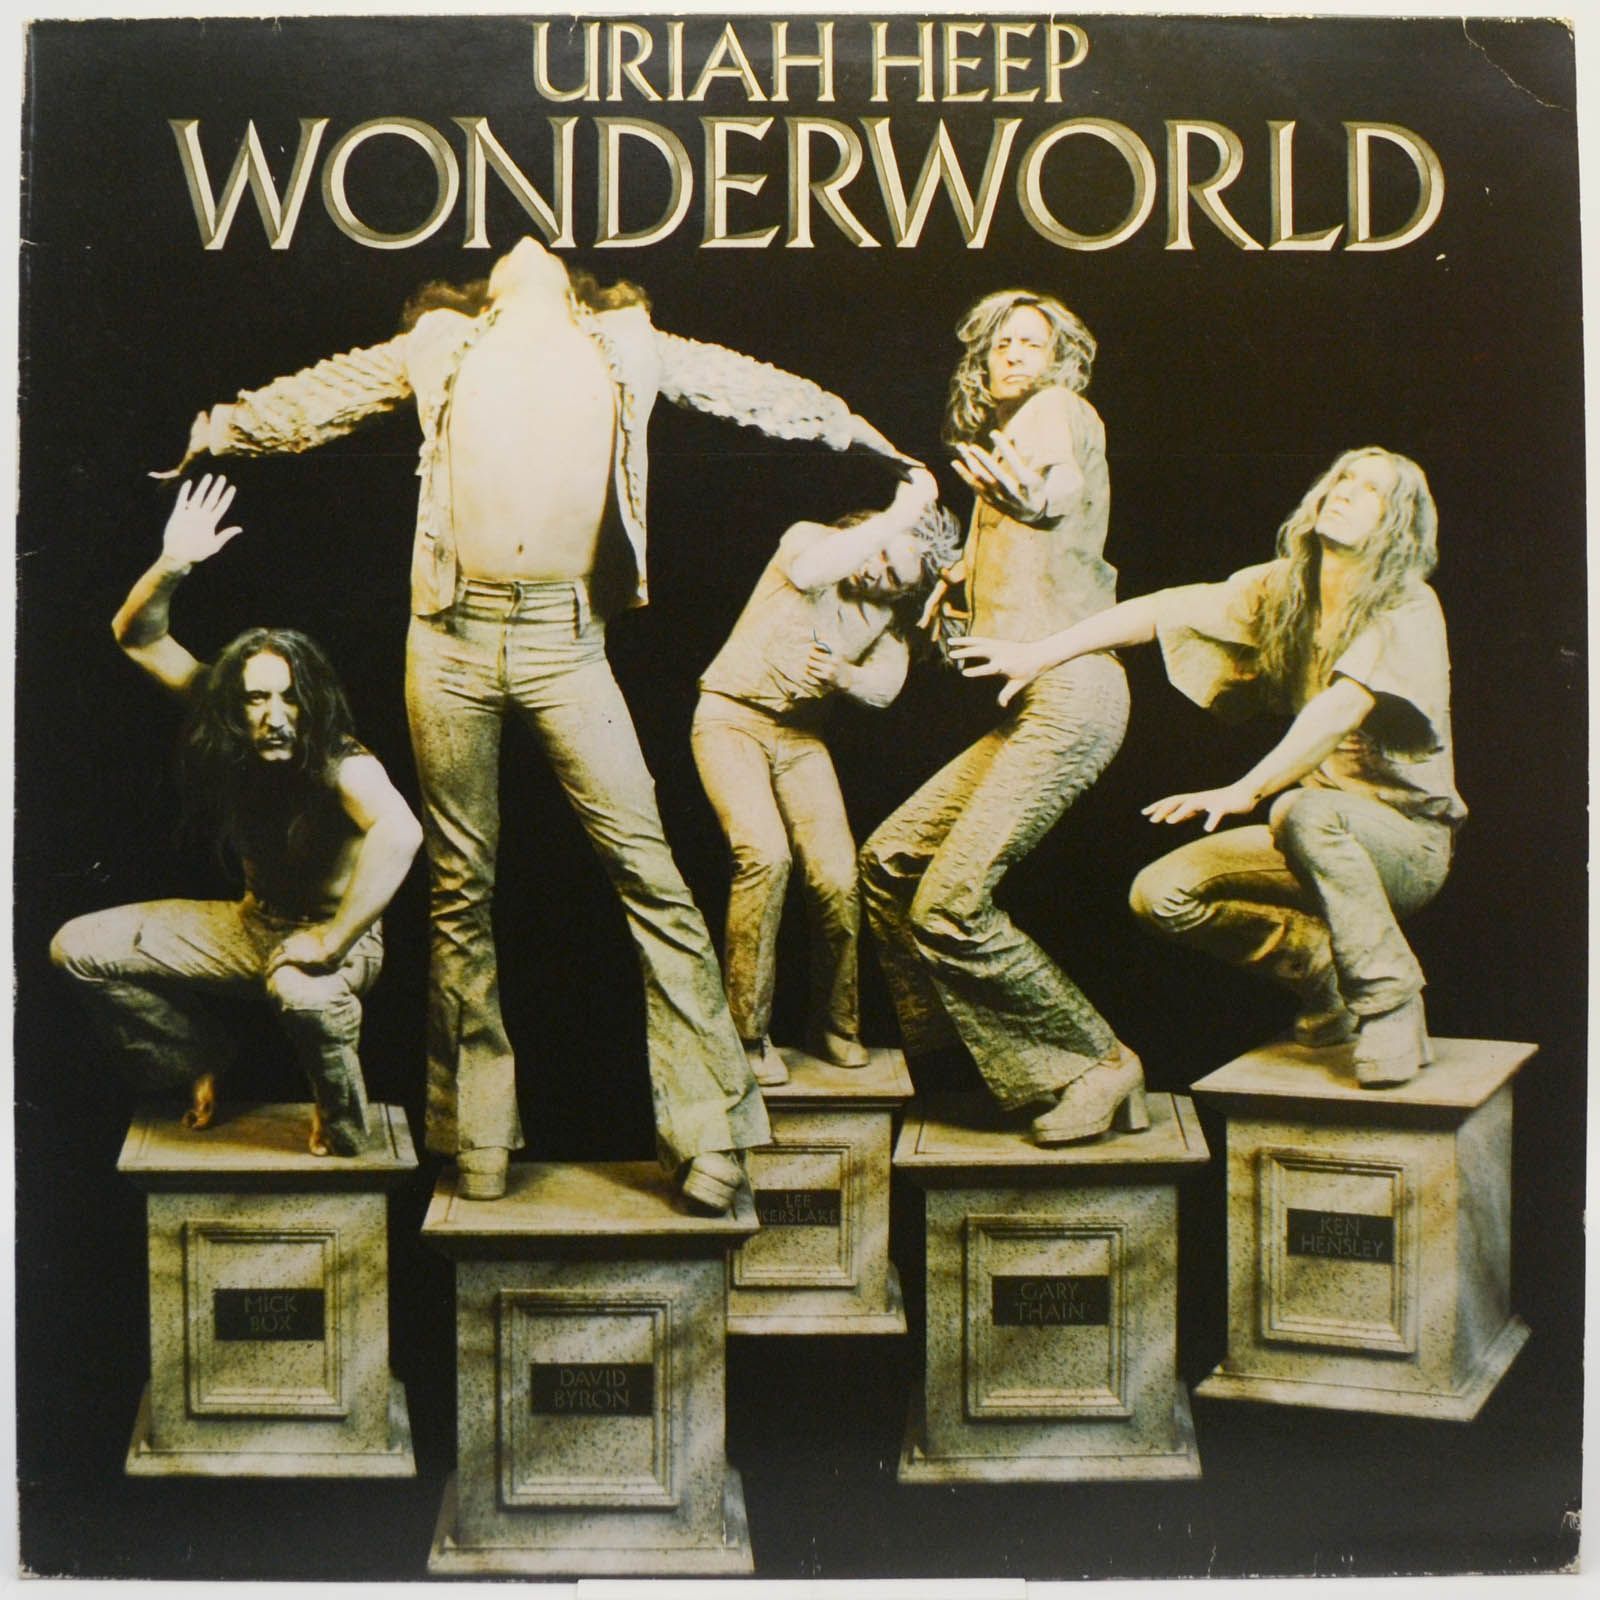 Uriah Heep — Wonderworld, 1974